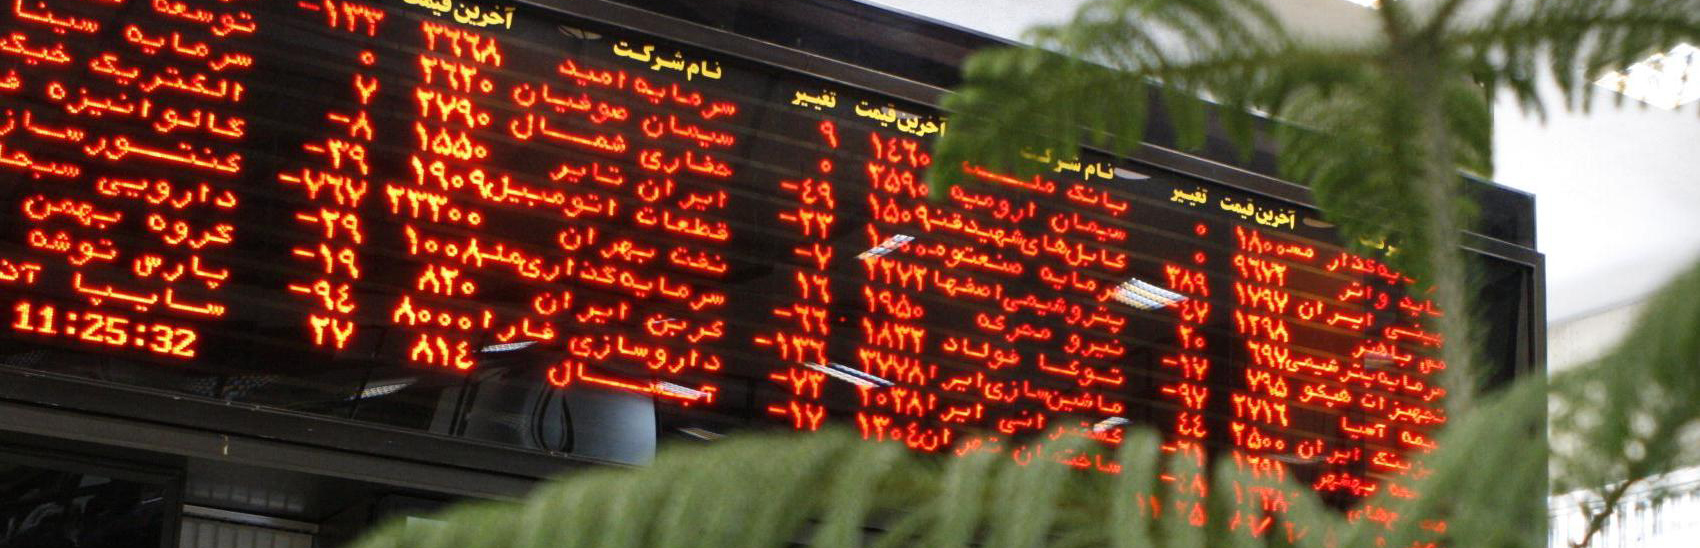 1.9 میلیارد سهم در بورس تهران داد و ستد شد